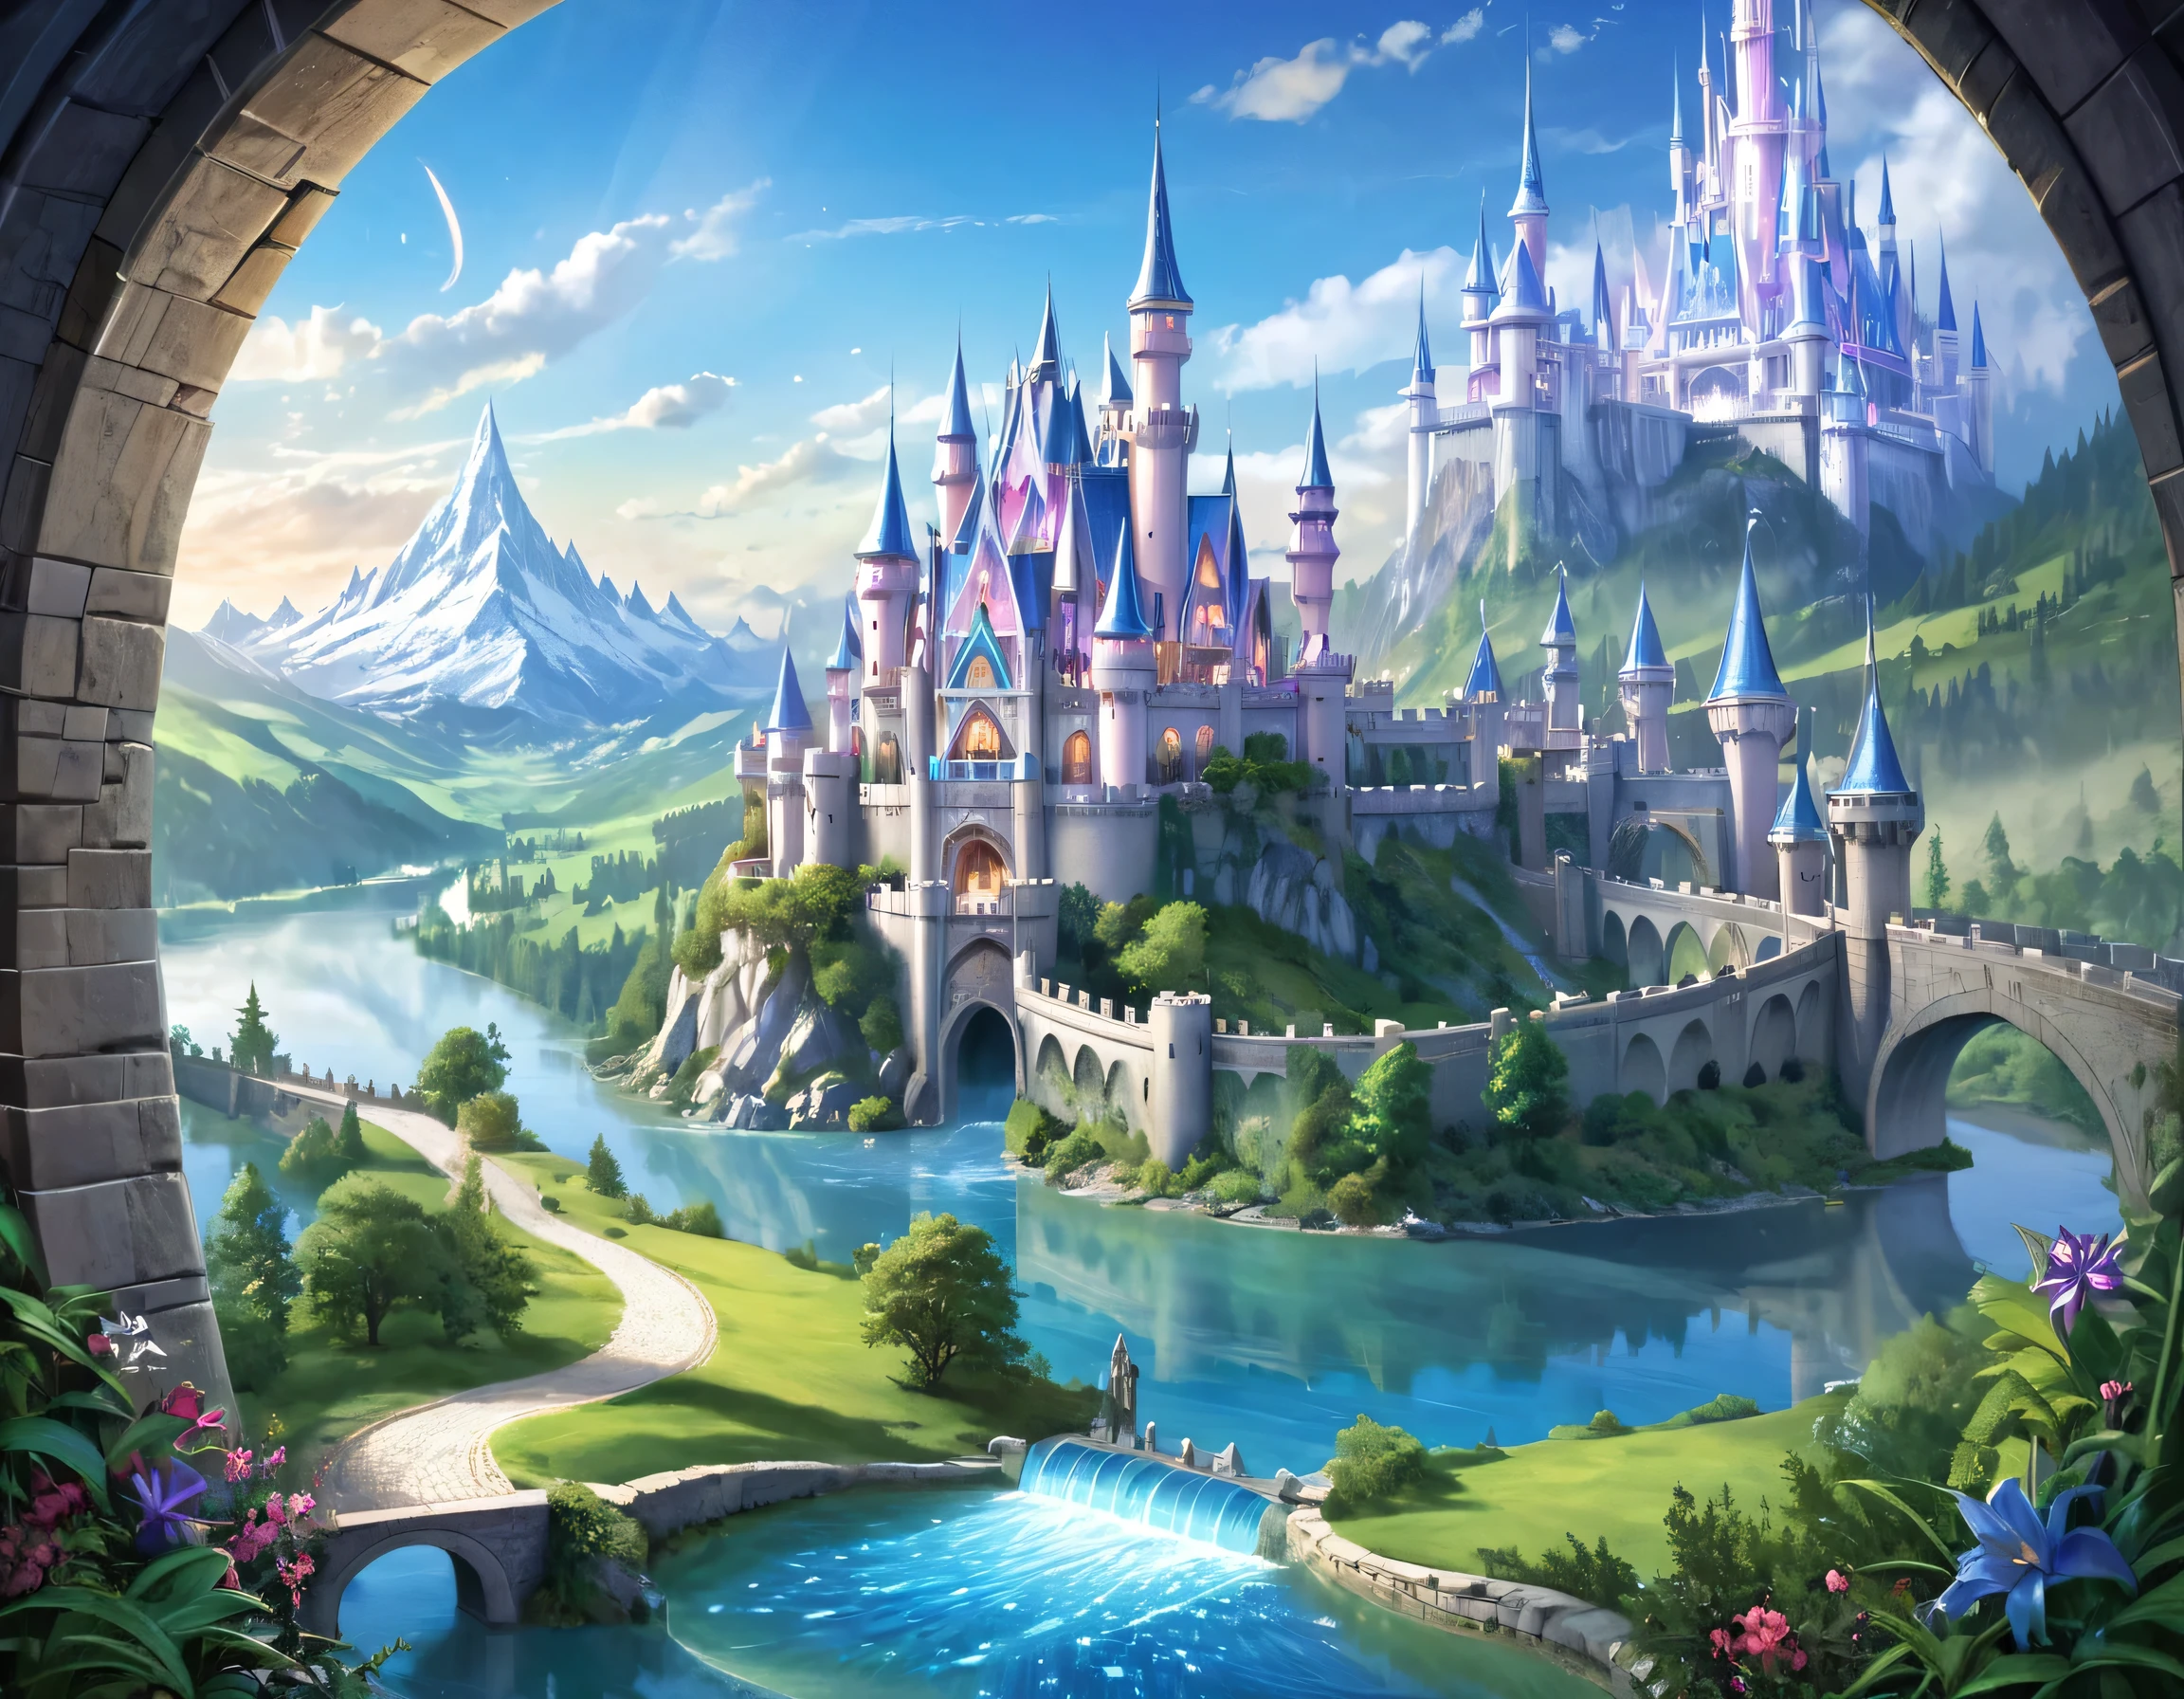 Fantasy-Kunst, RPG art, eine Prinzessin, die durch ihr Fenster auf ein magisches Schloss blickt, eine wunderschöne Elfenprinzessin, die durch ihr Fenster auf ein magisches Schloss blickt, ein beeindruckendes, detailgetreues Schloss, mit Türmen, Brücken, ein Graben, auf einem Berggipfel stehend farbig glasiert_xl, Brandon Woelfel Style page